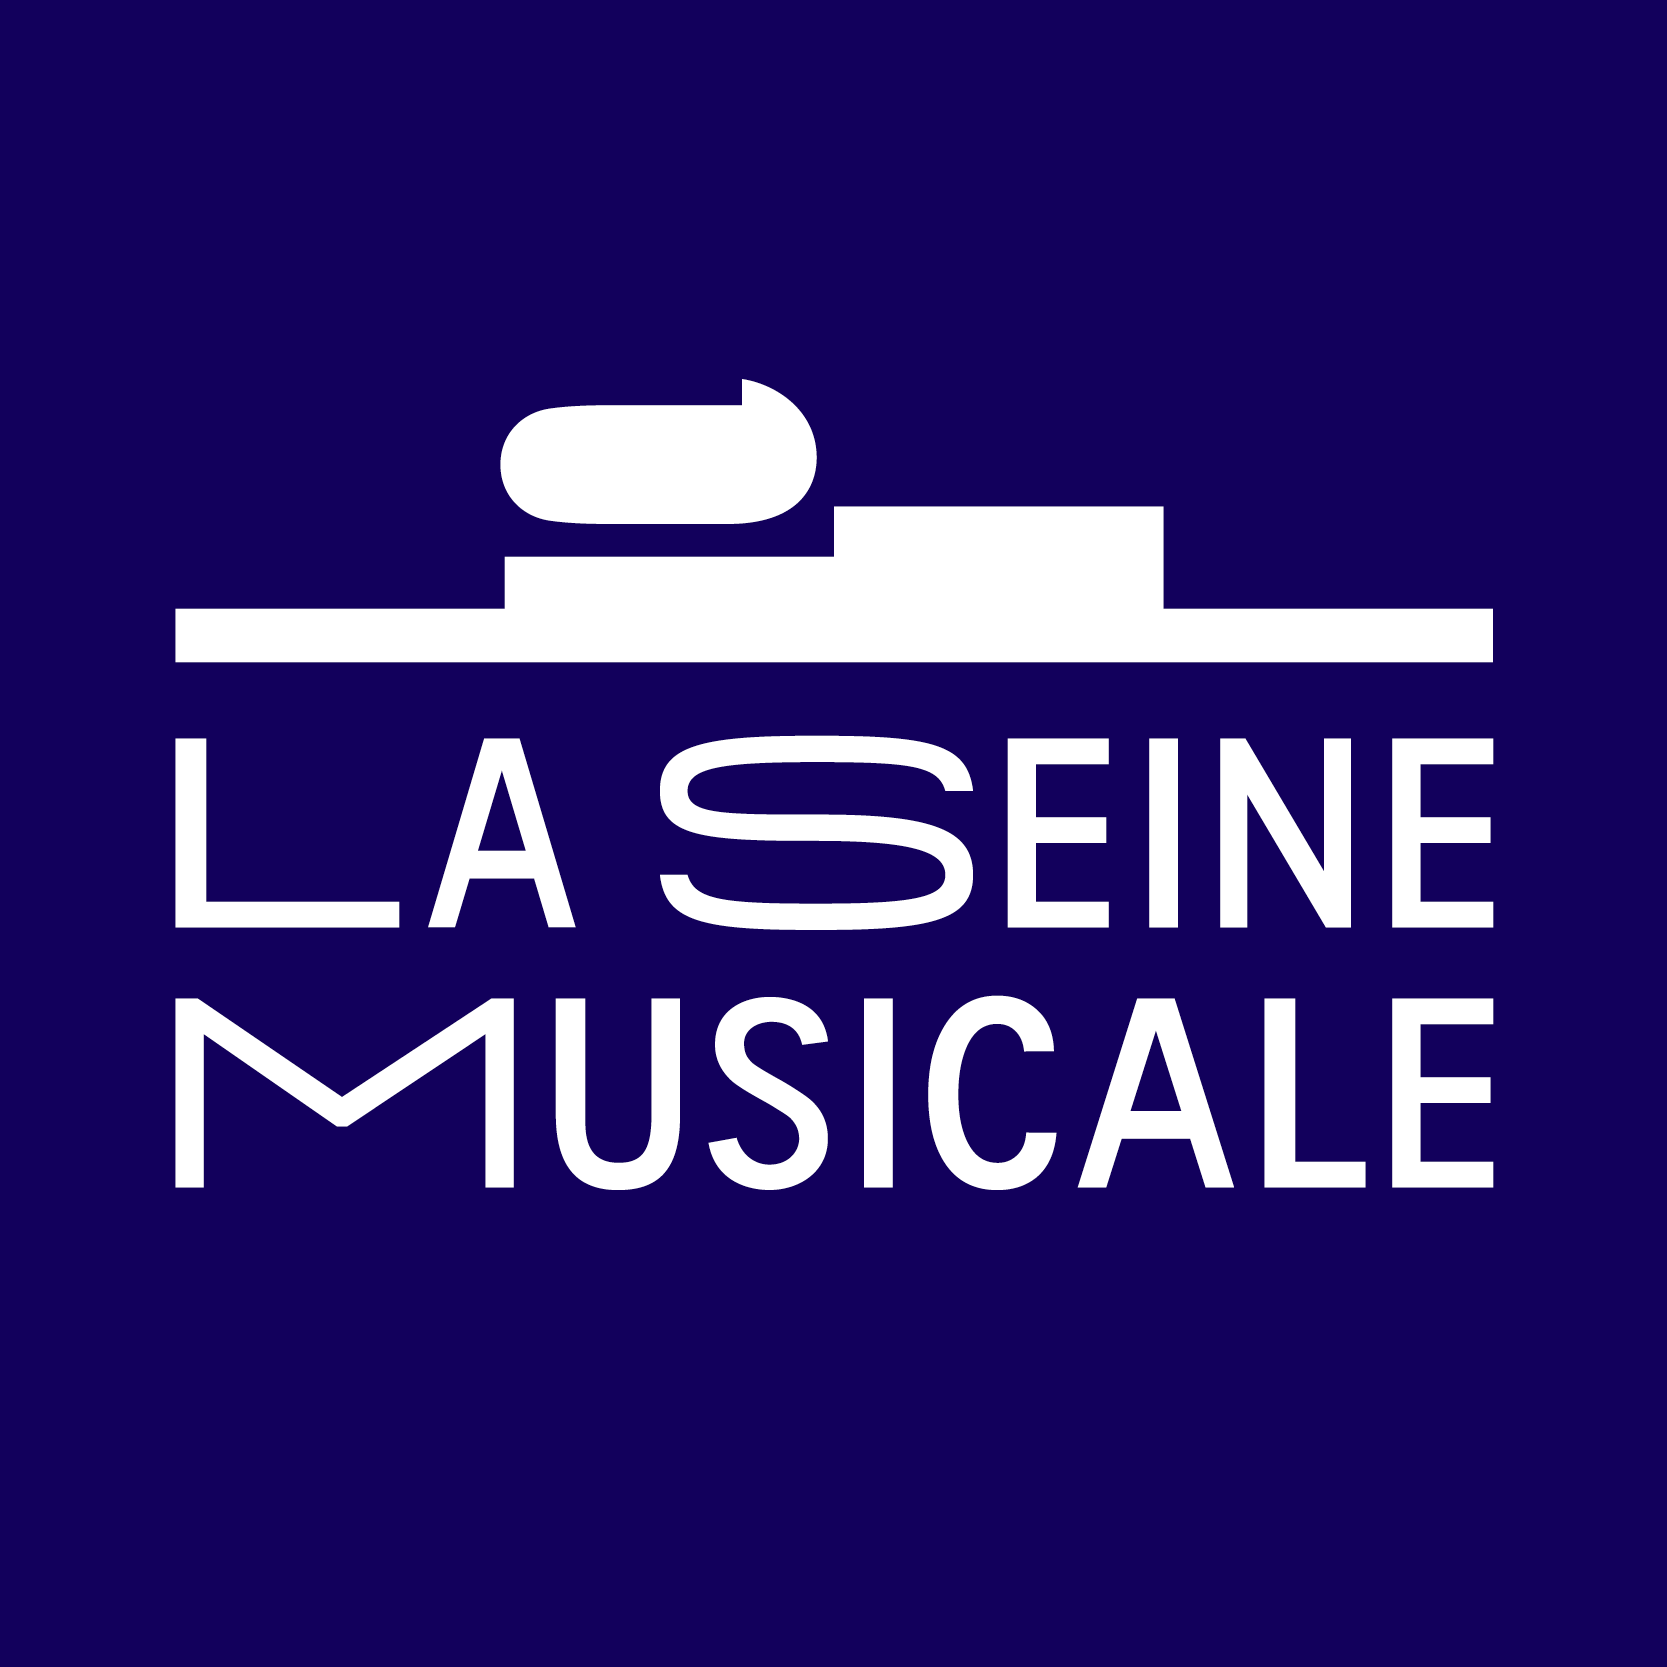 Insula Orchestra al La Seine Musicale Tickets